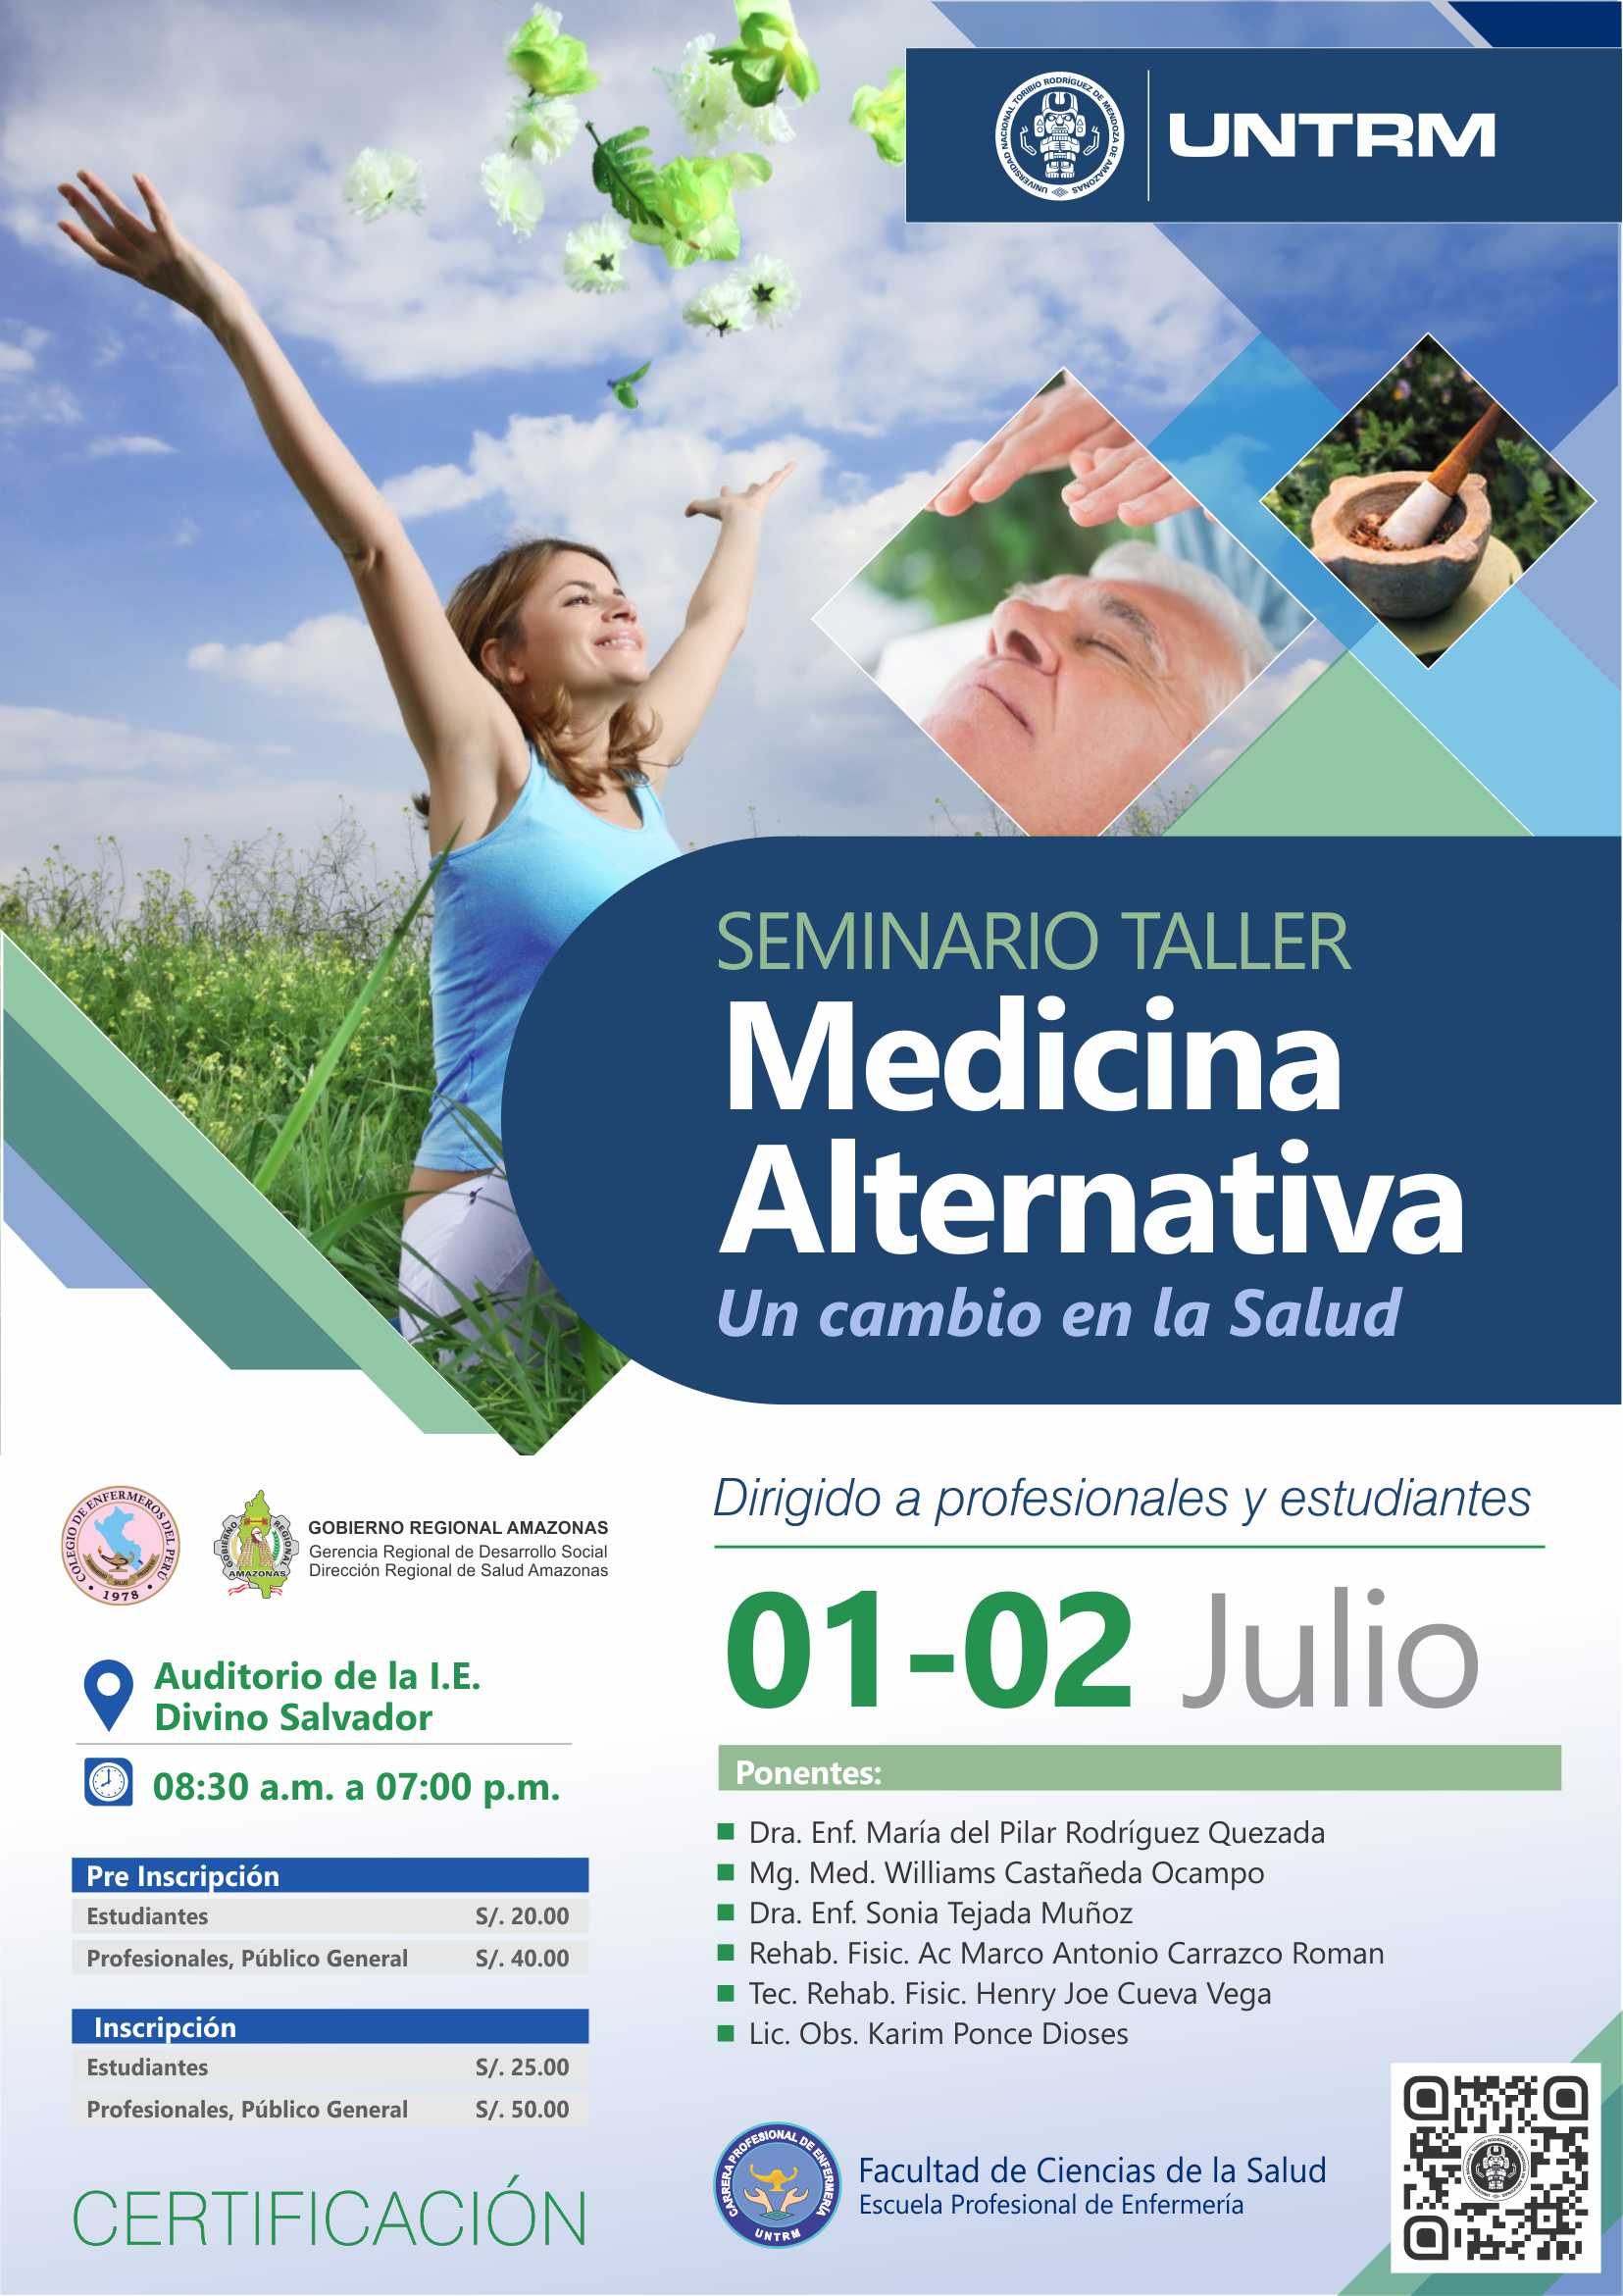 Seminario Taller Medicina Alternativa Un Cambio En La Salud Untrm 5950